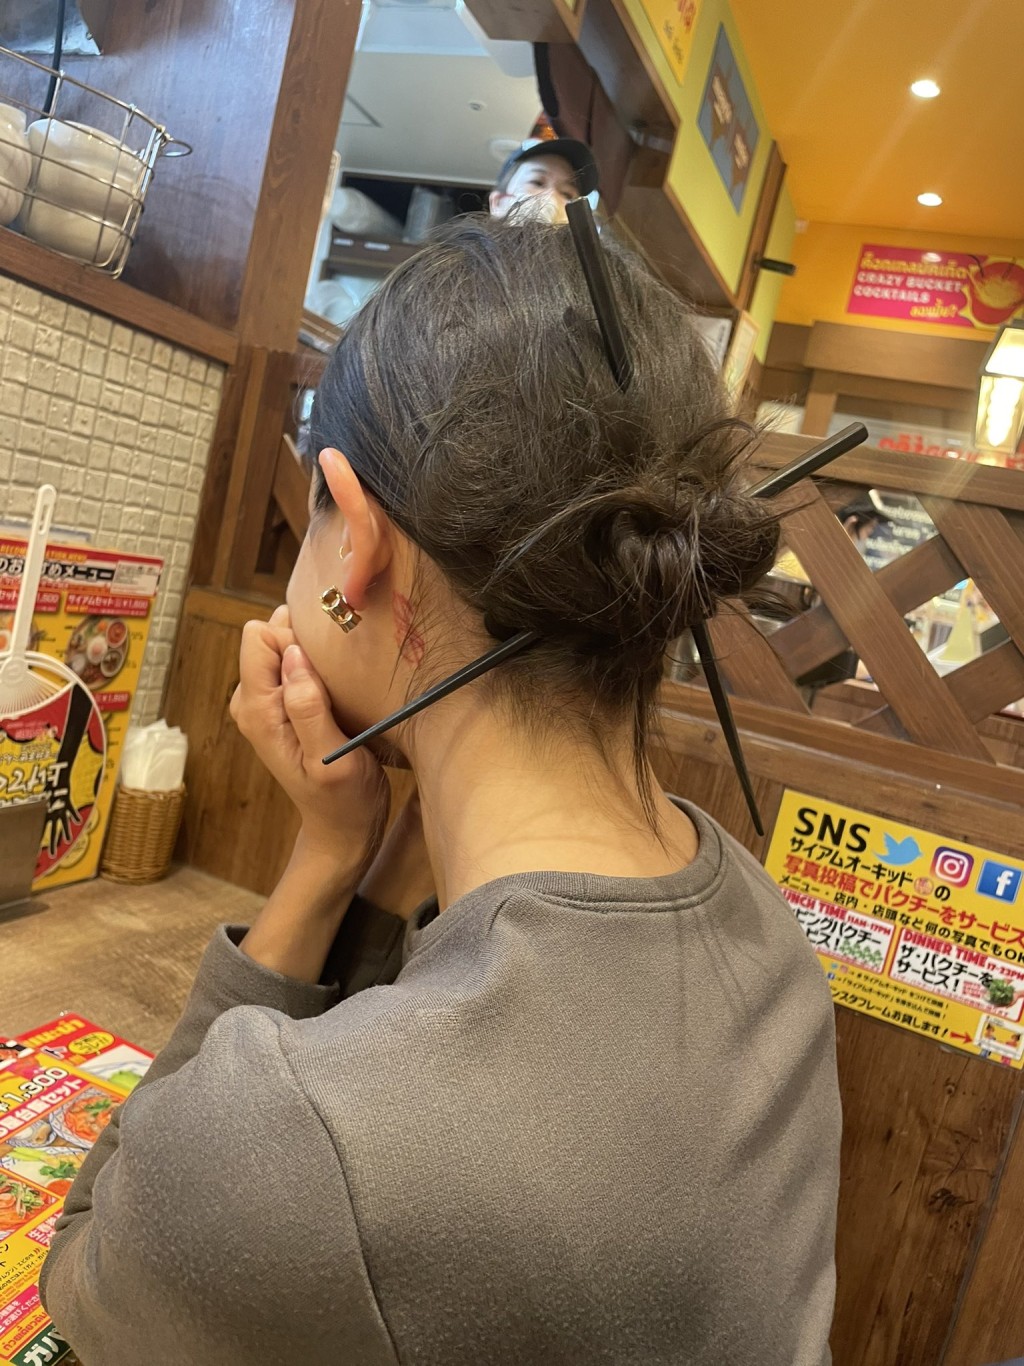 Juliana Brown炫耀用食肆筷子扎頭髮的照片引發熱議。 X